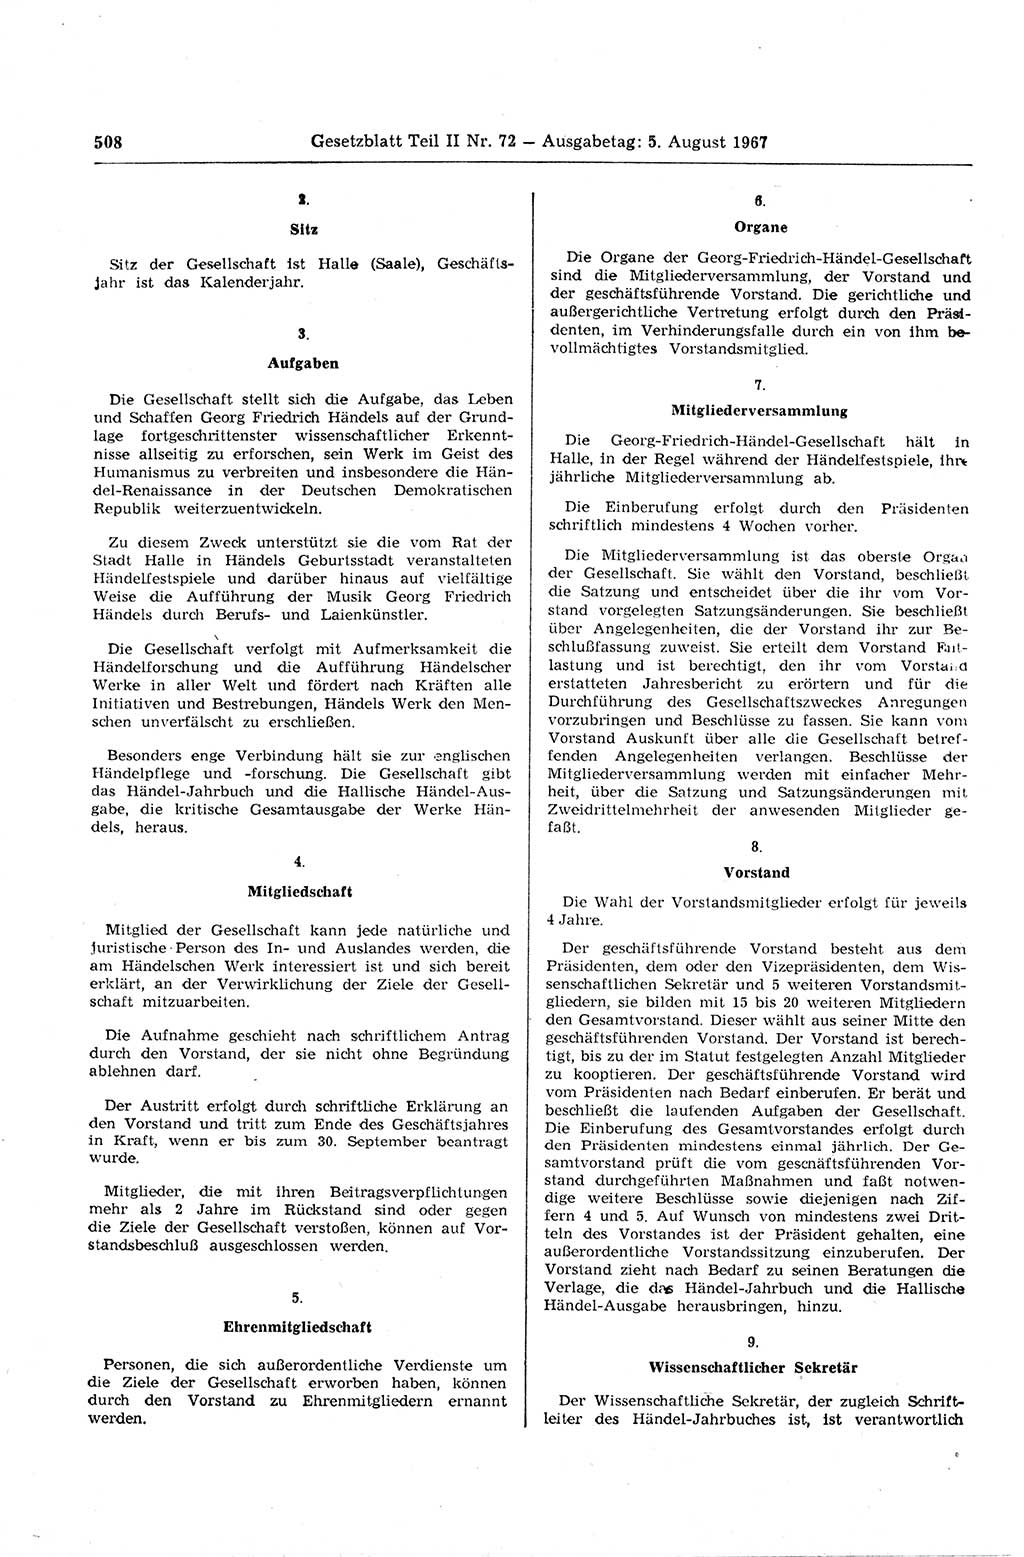 Gesetzblatt (GBl.) der Deutschen Demokratischen Republik (DDR) Teil ⅠⅠ 1967, Seite 508 (GBl. DDR ⅠⅠ 1967, S. 508)